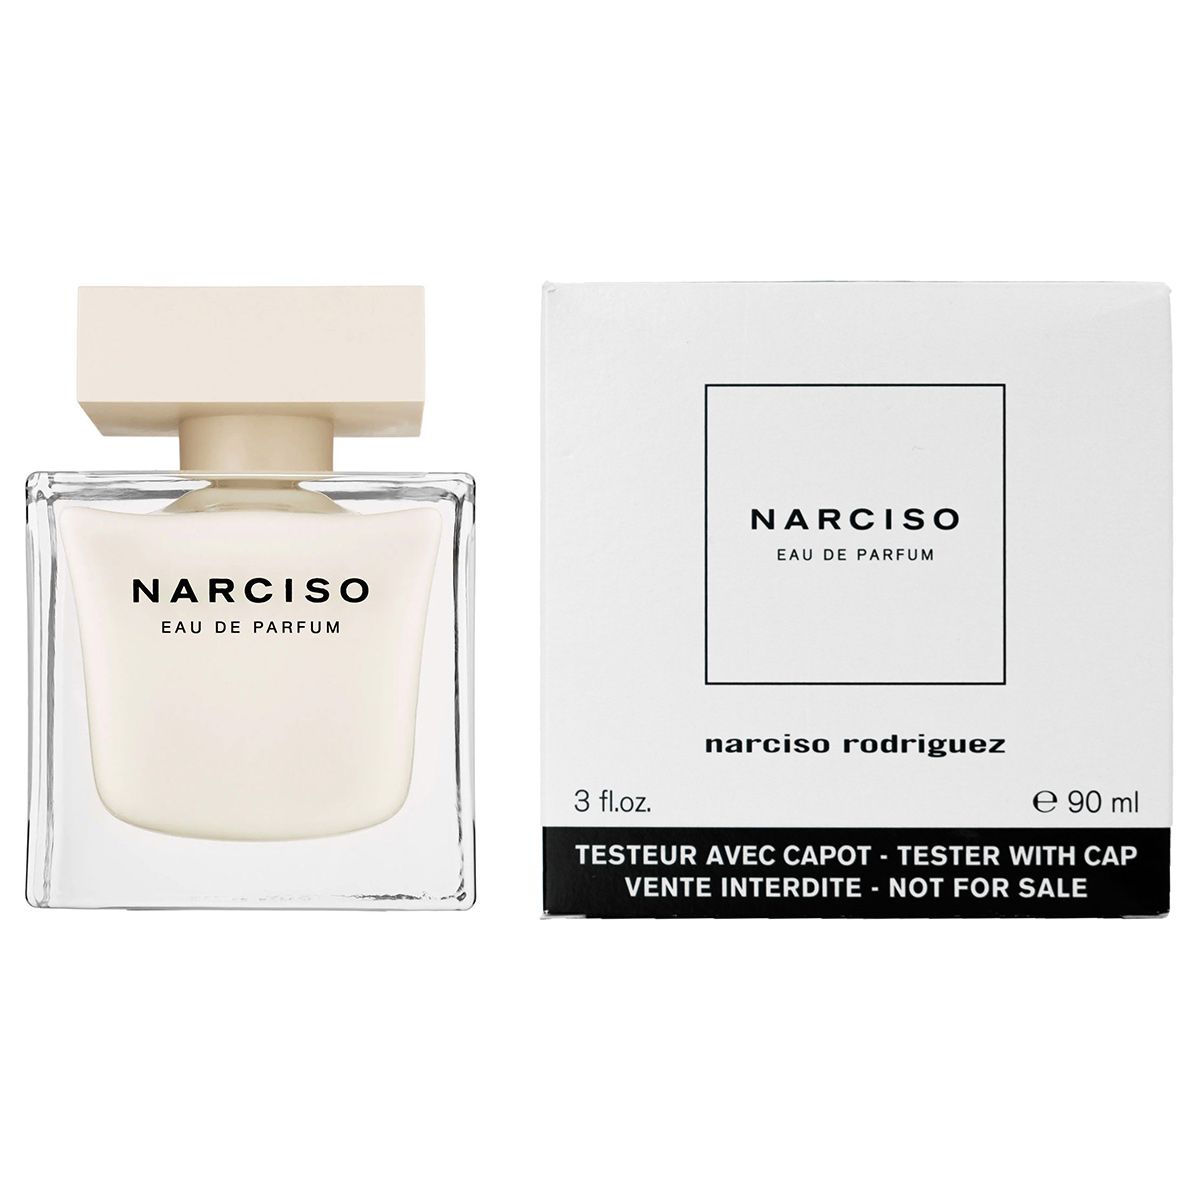  Narciso Eau De Parfum 